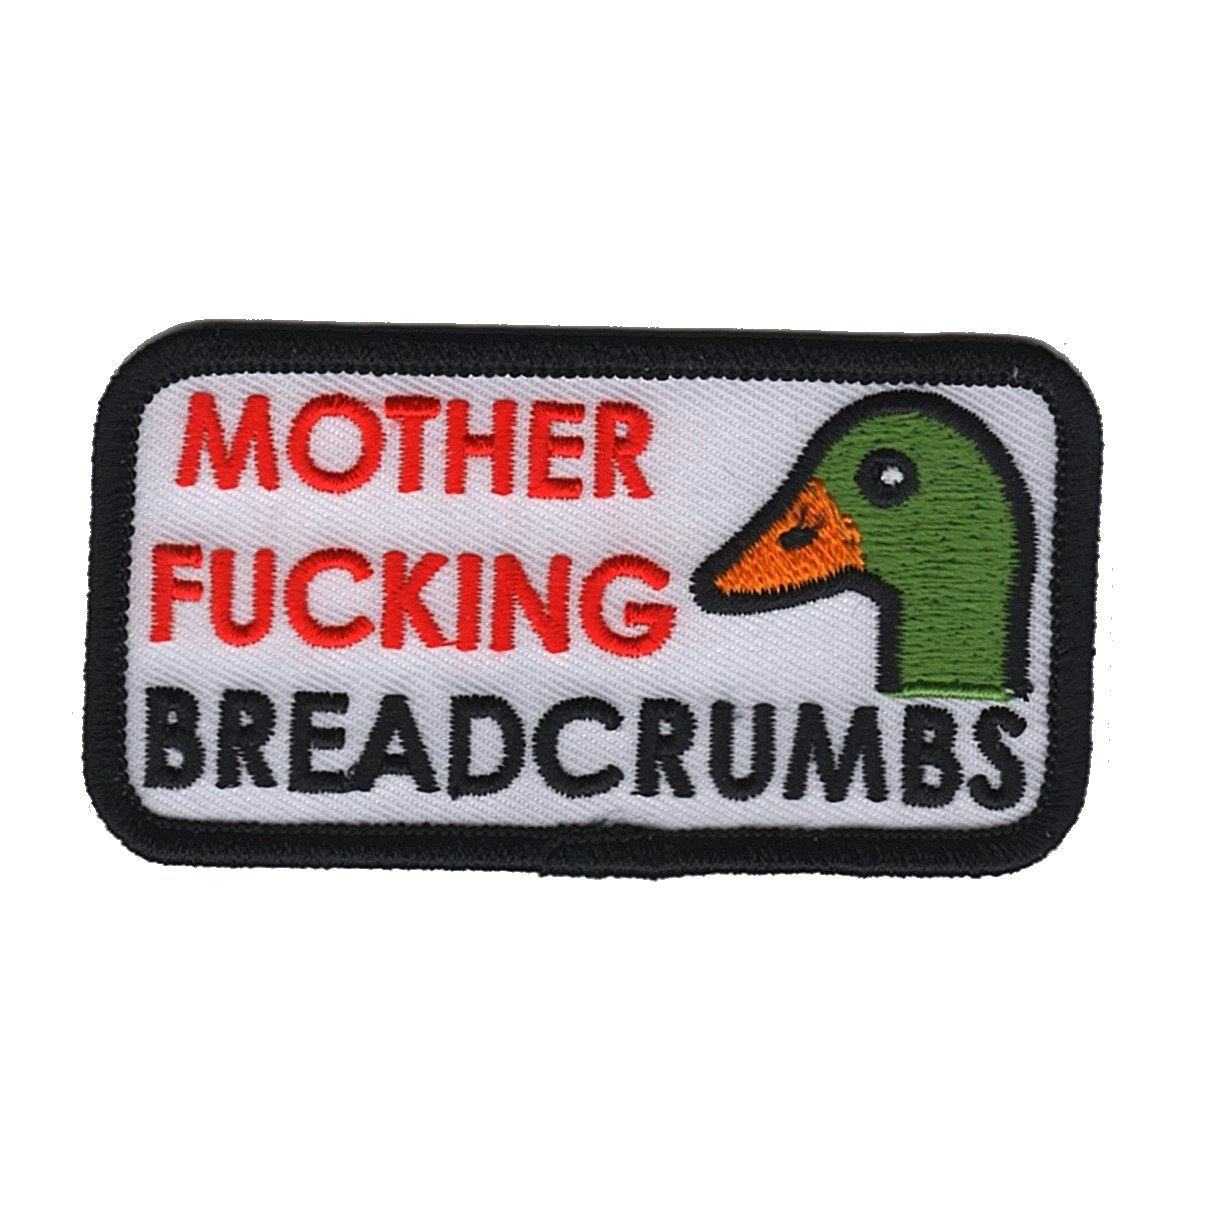 Mother Fucking Breadcrumbs